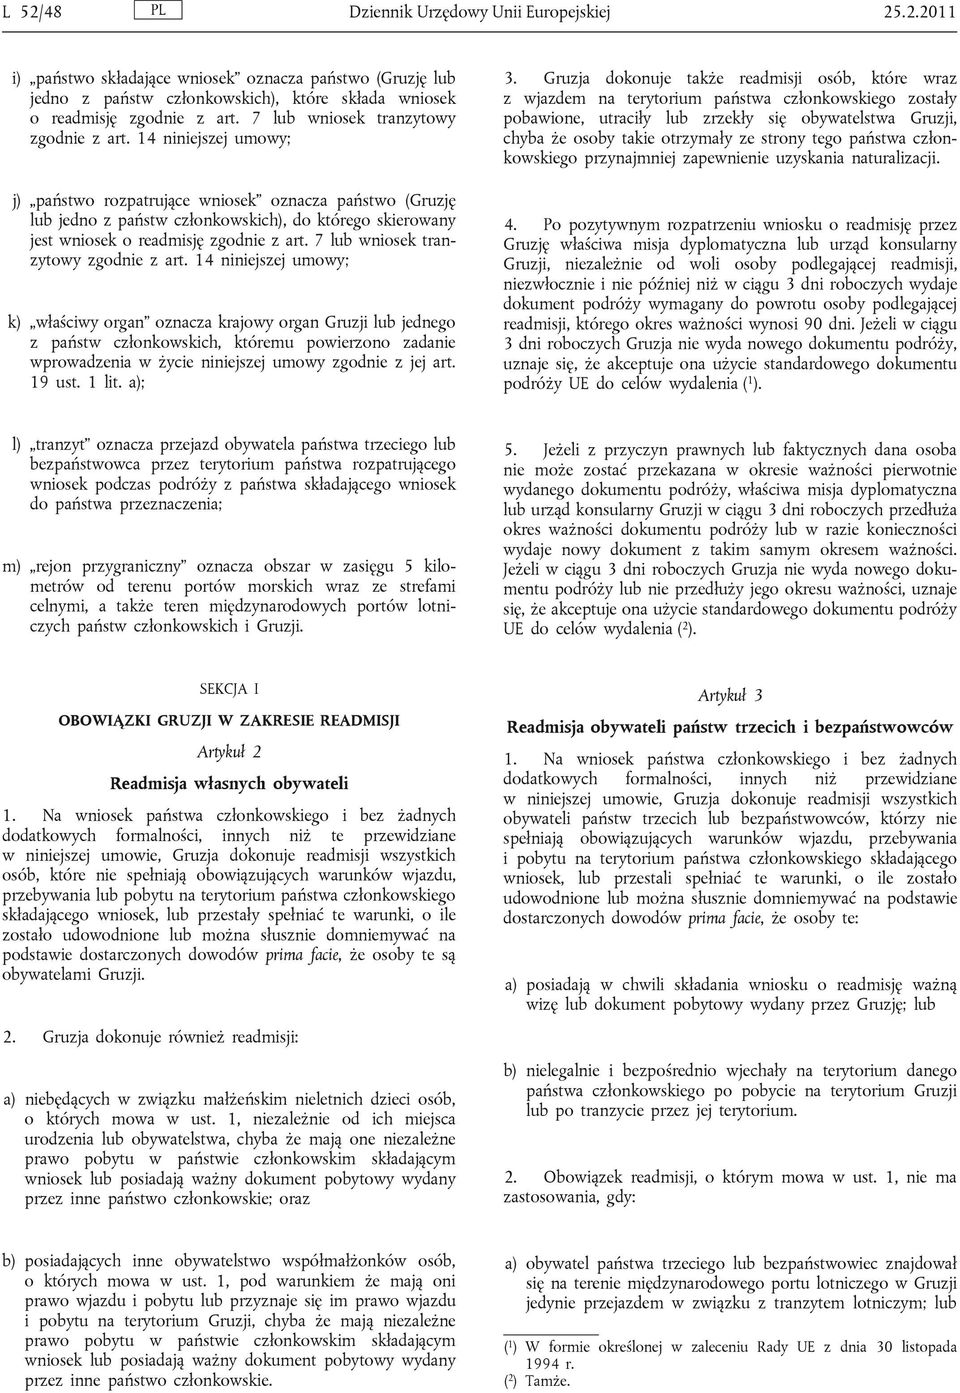 14 niniejszej umowy; j) państwo rozpatrujące wniosek oznacza państwo (Gruzję lub jedno z państw członkowskich), do którego skierowany jest wniosek o readmisję zgodnie z art.